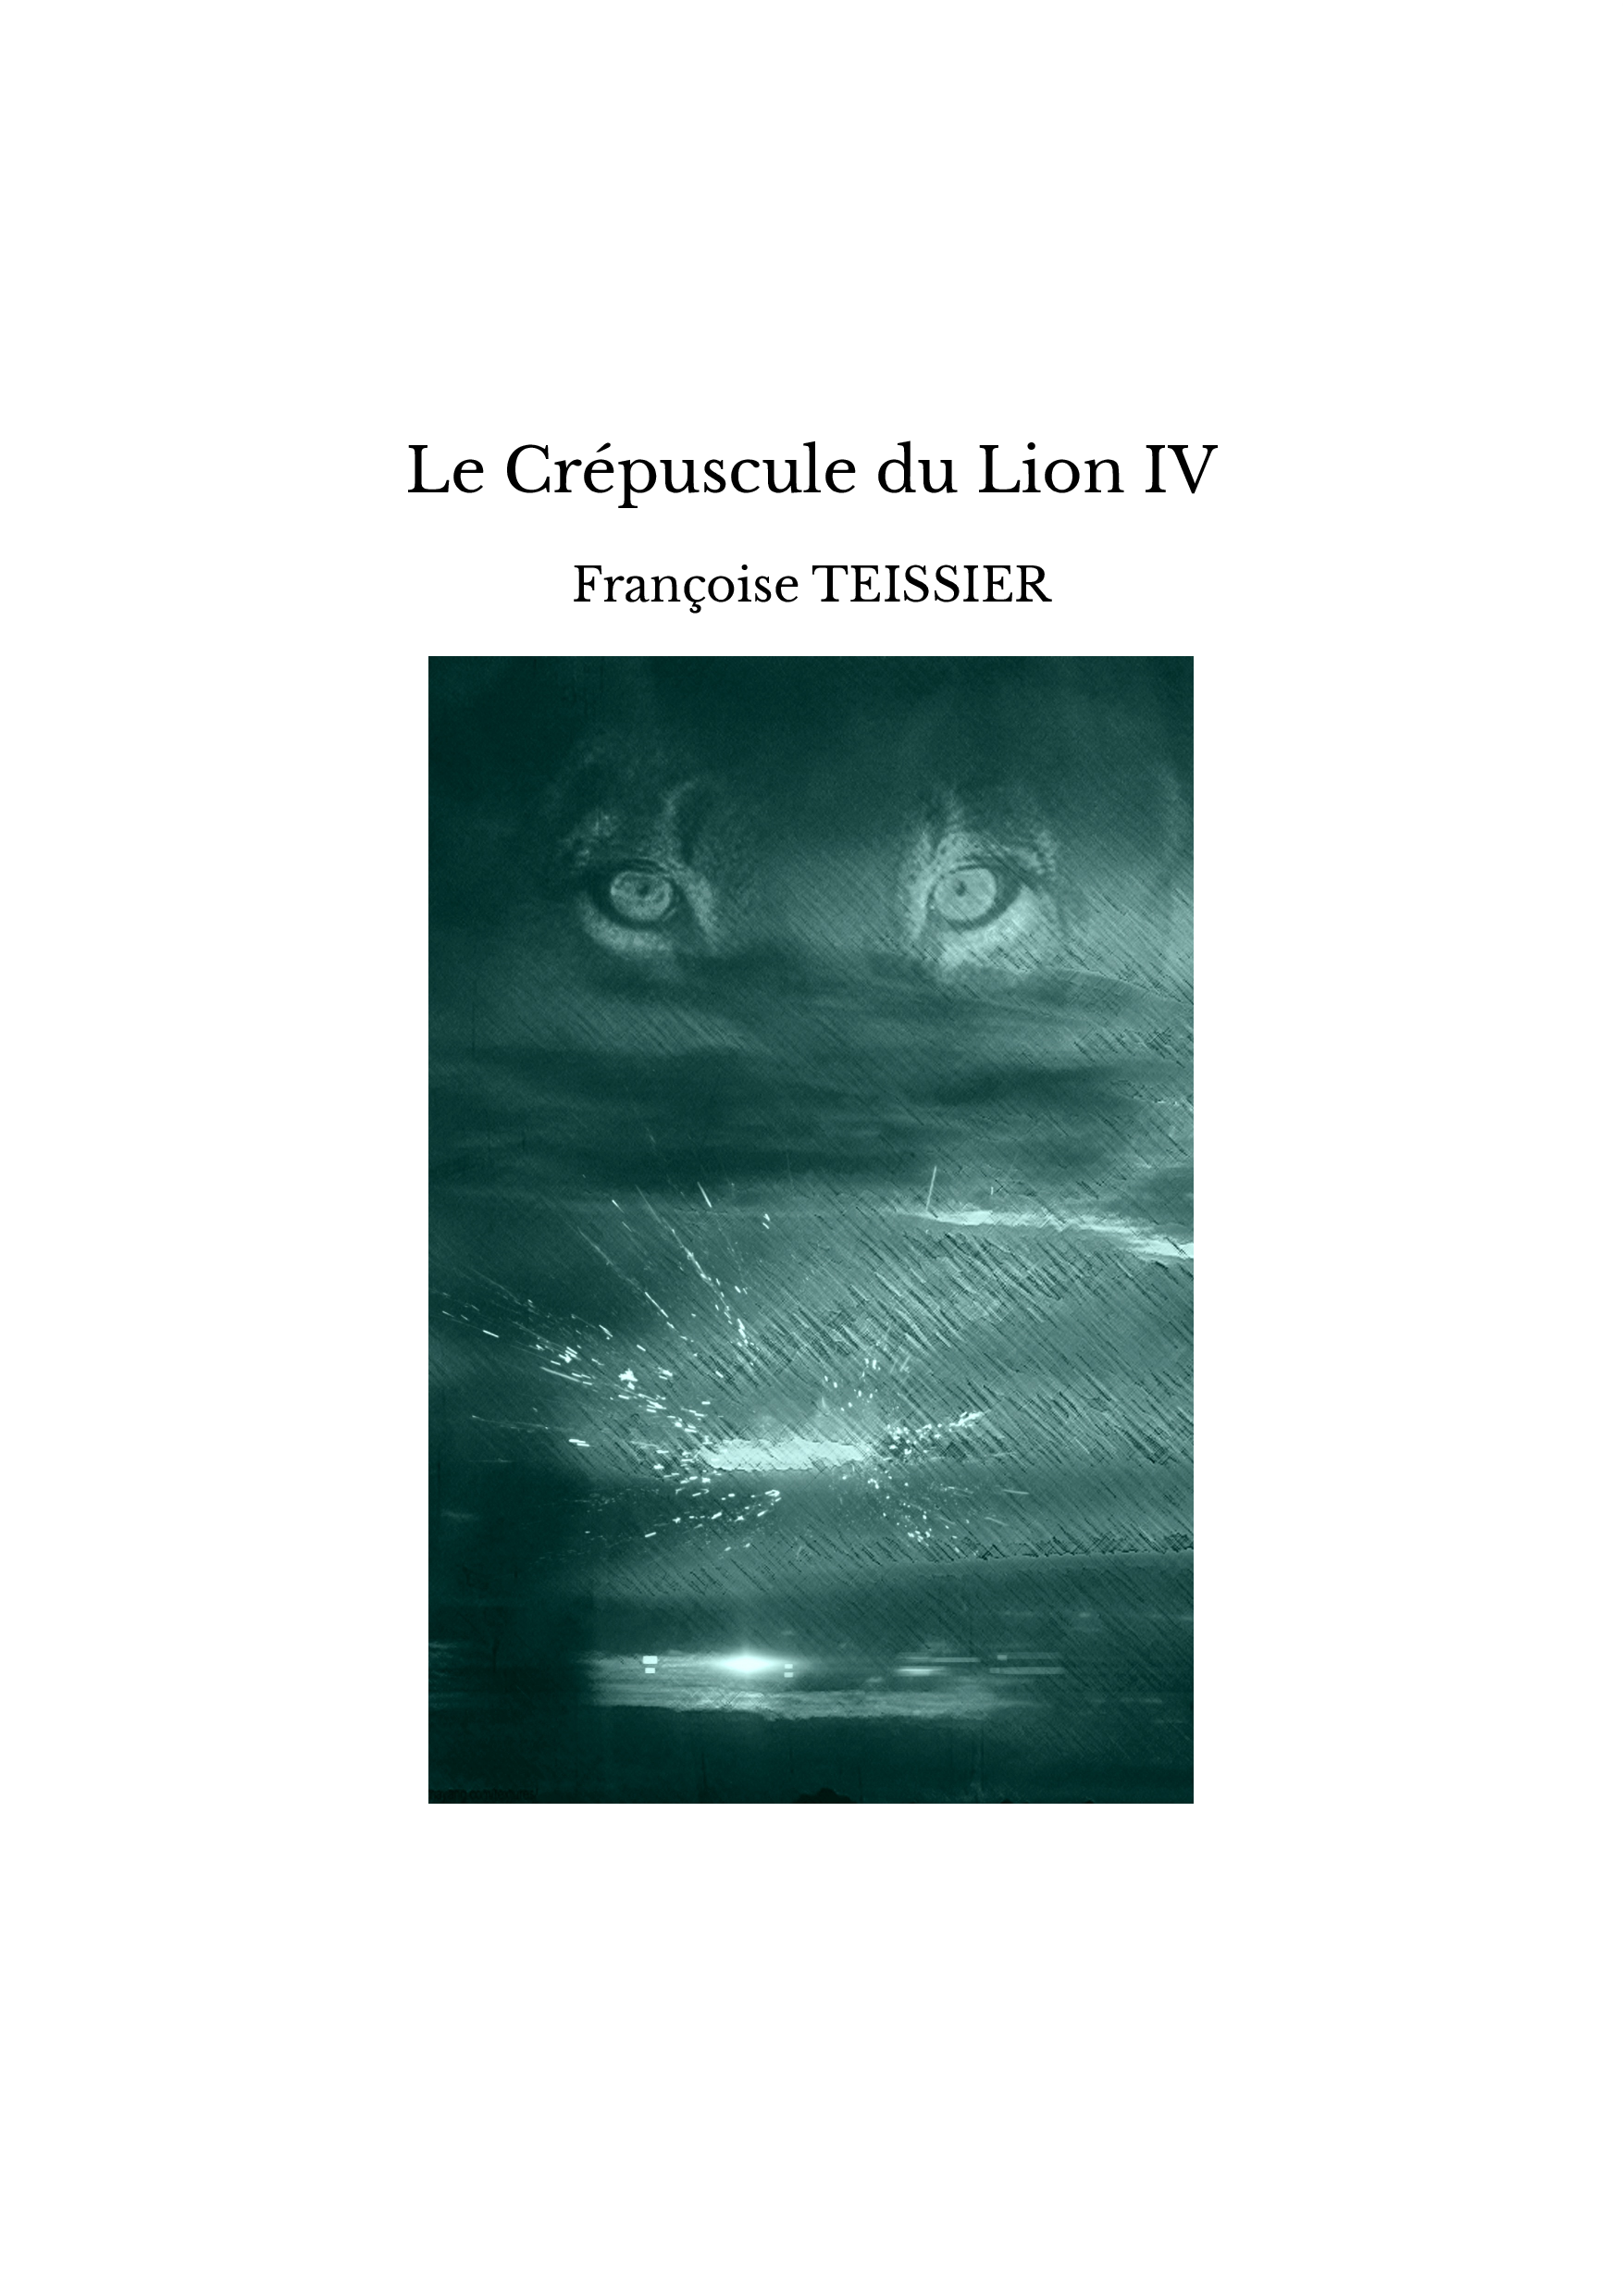 Le Crépuscule du Lion IV